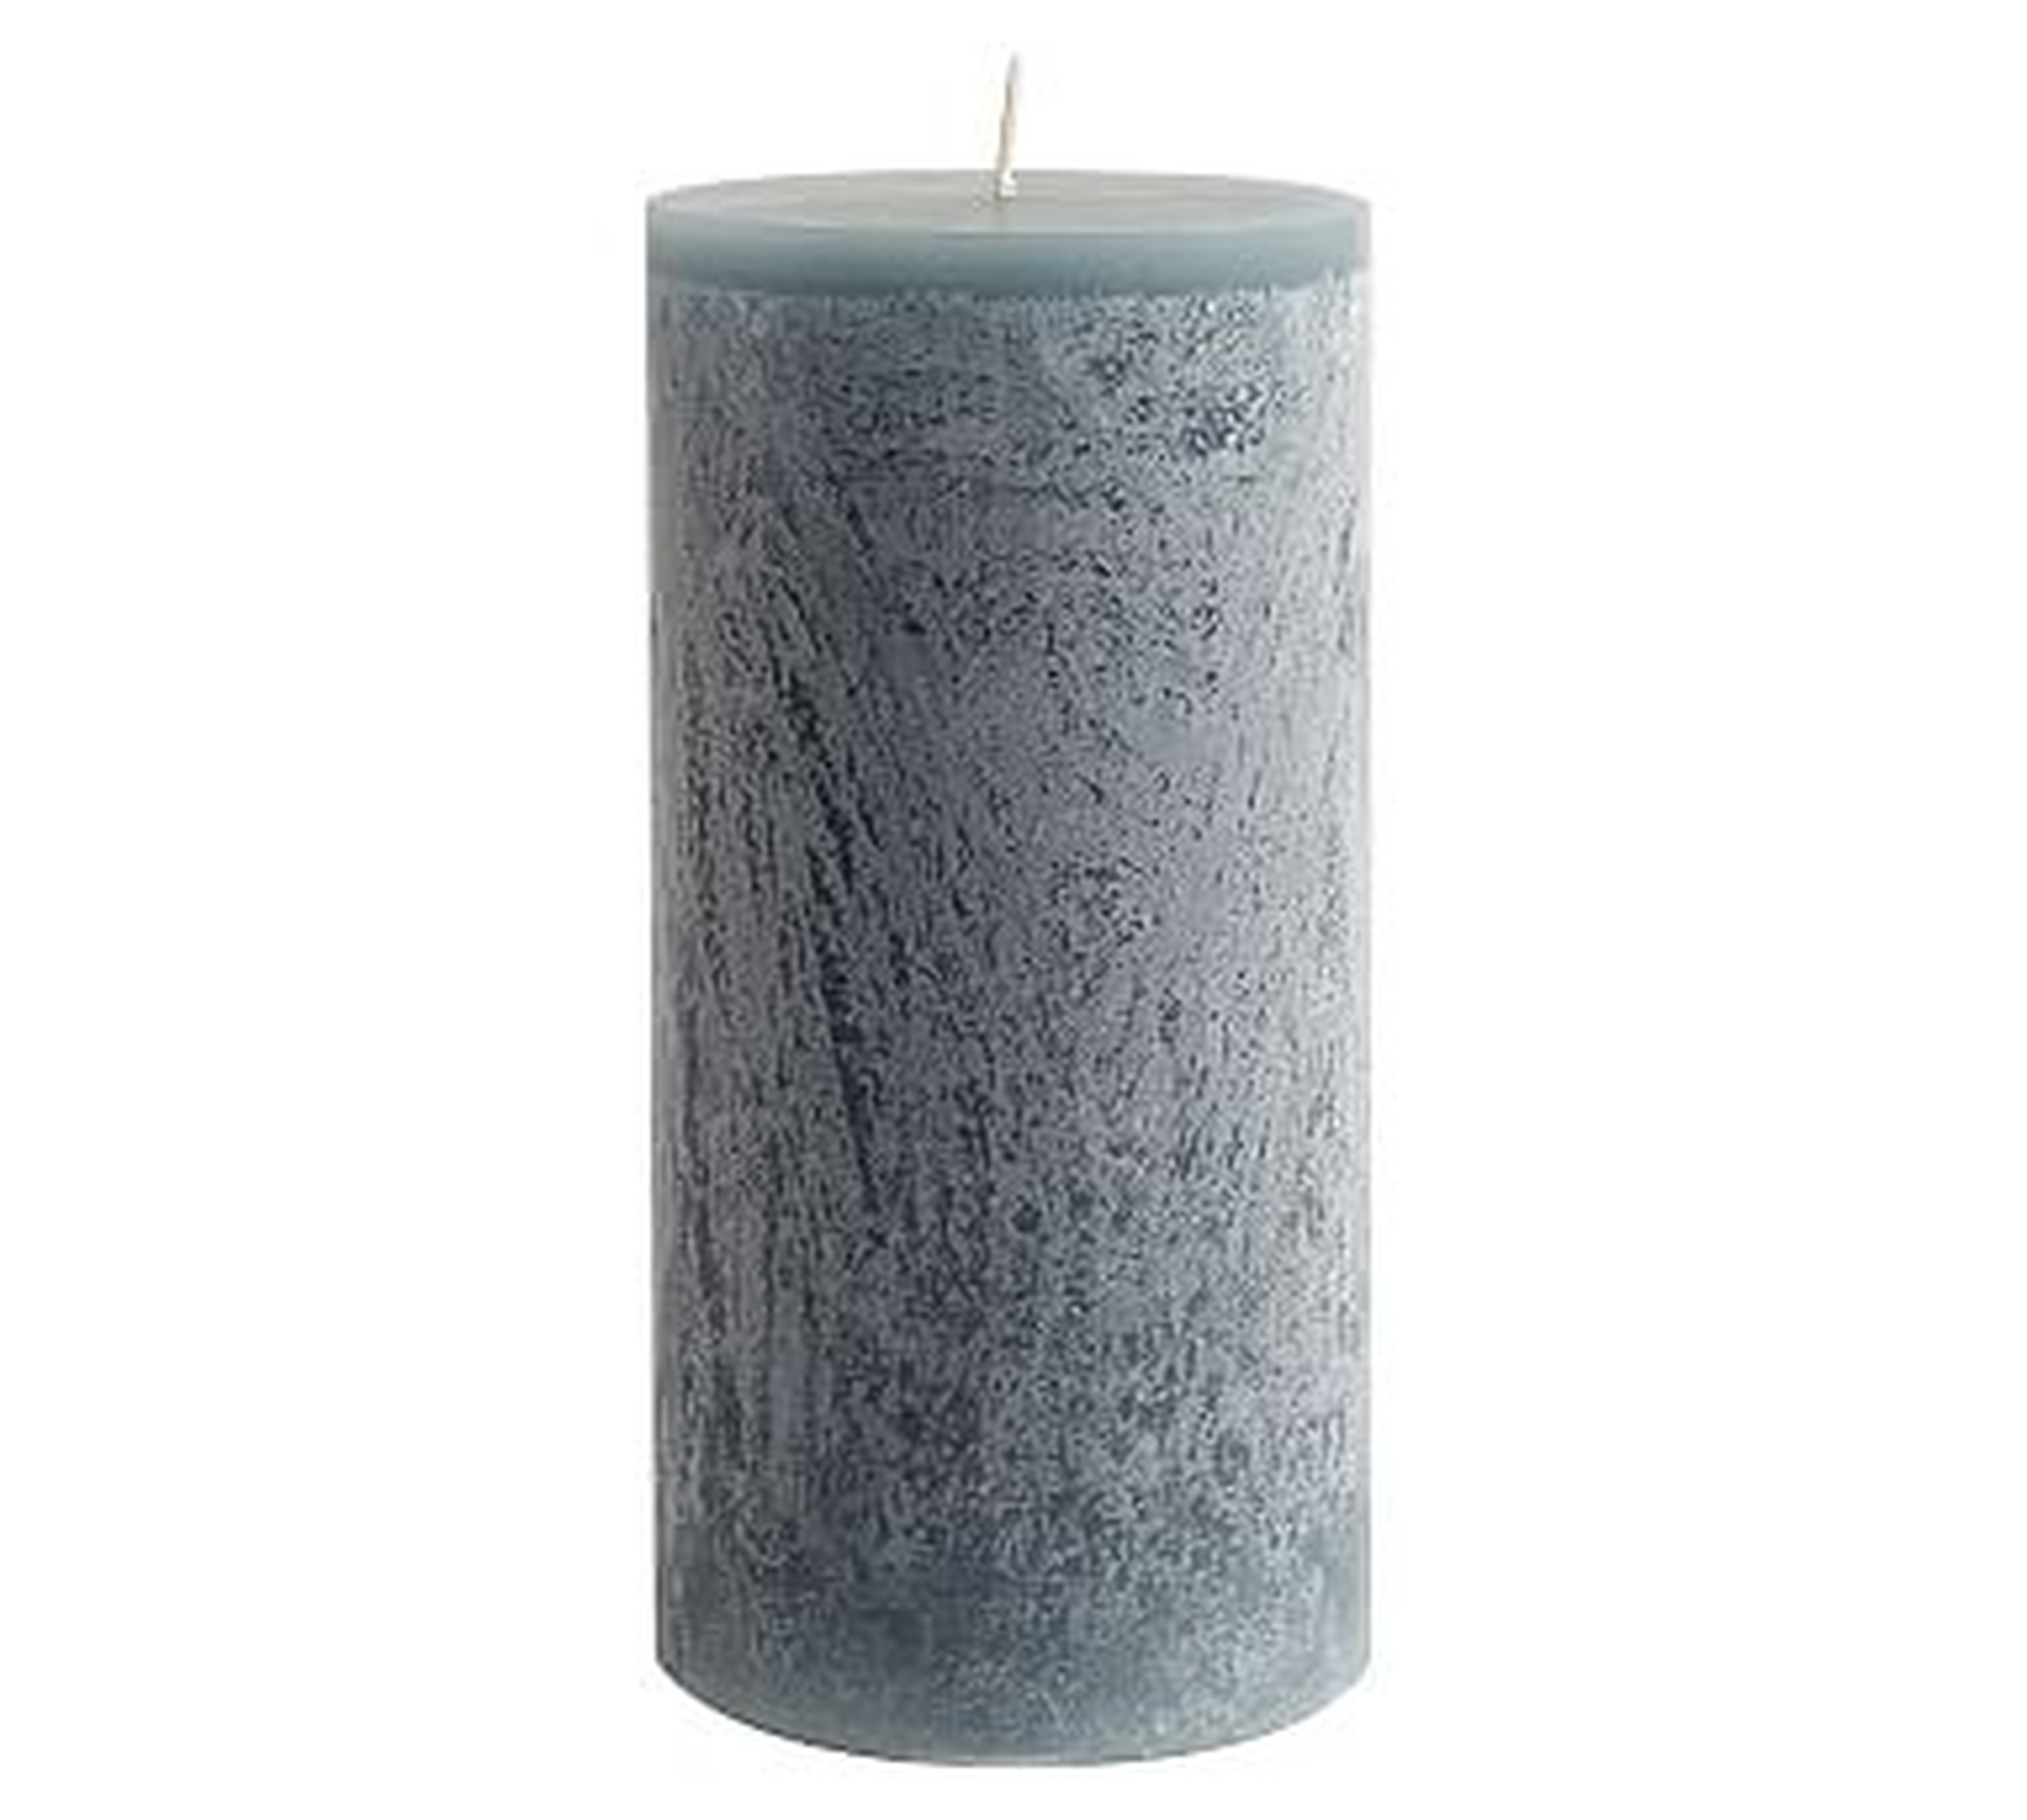 Scented Timber Pillar Candles, Flint Blue, Blackberry Yuzu, 4" x 8" - Pottery Barn